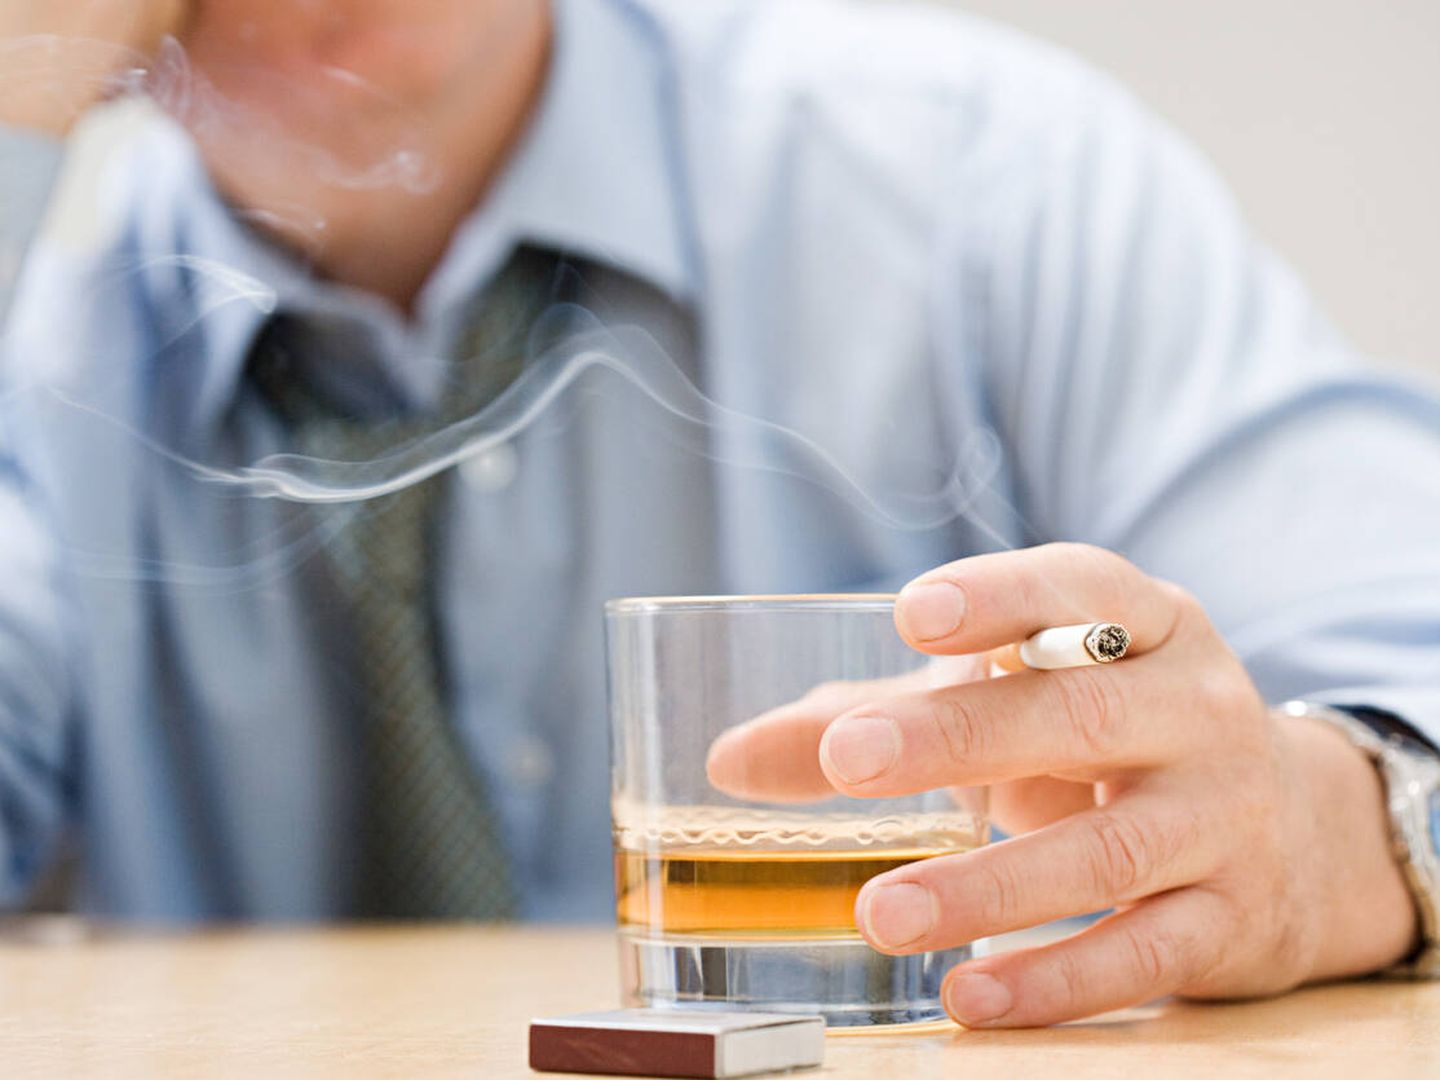 Una investigación revela que la genética predispone a desarrollar trastornos como el alcoholismo y el tabaquismo. (iStock)